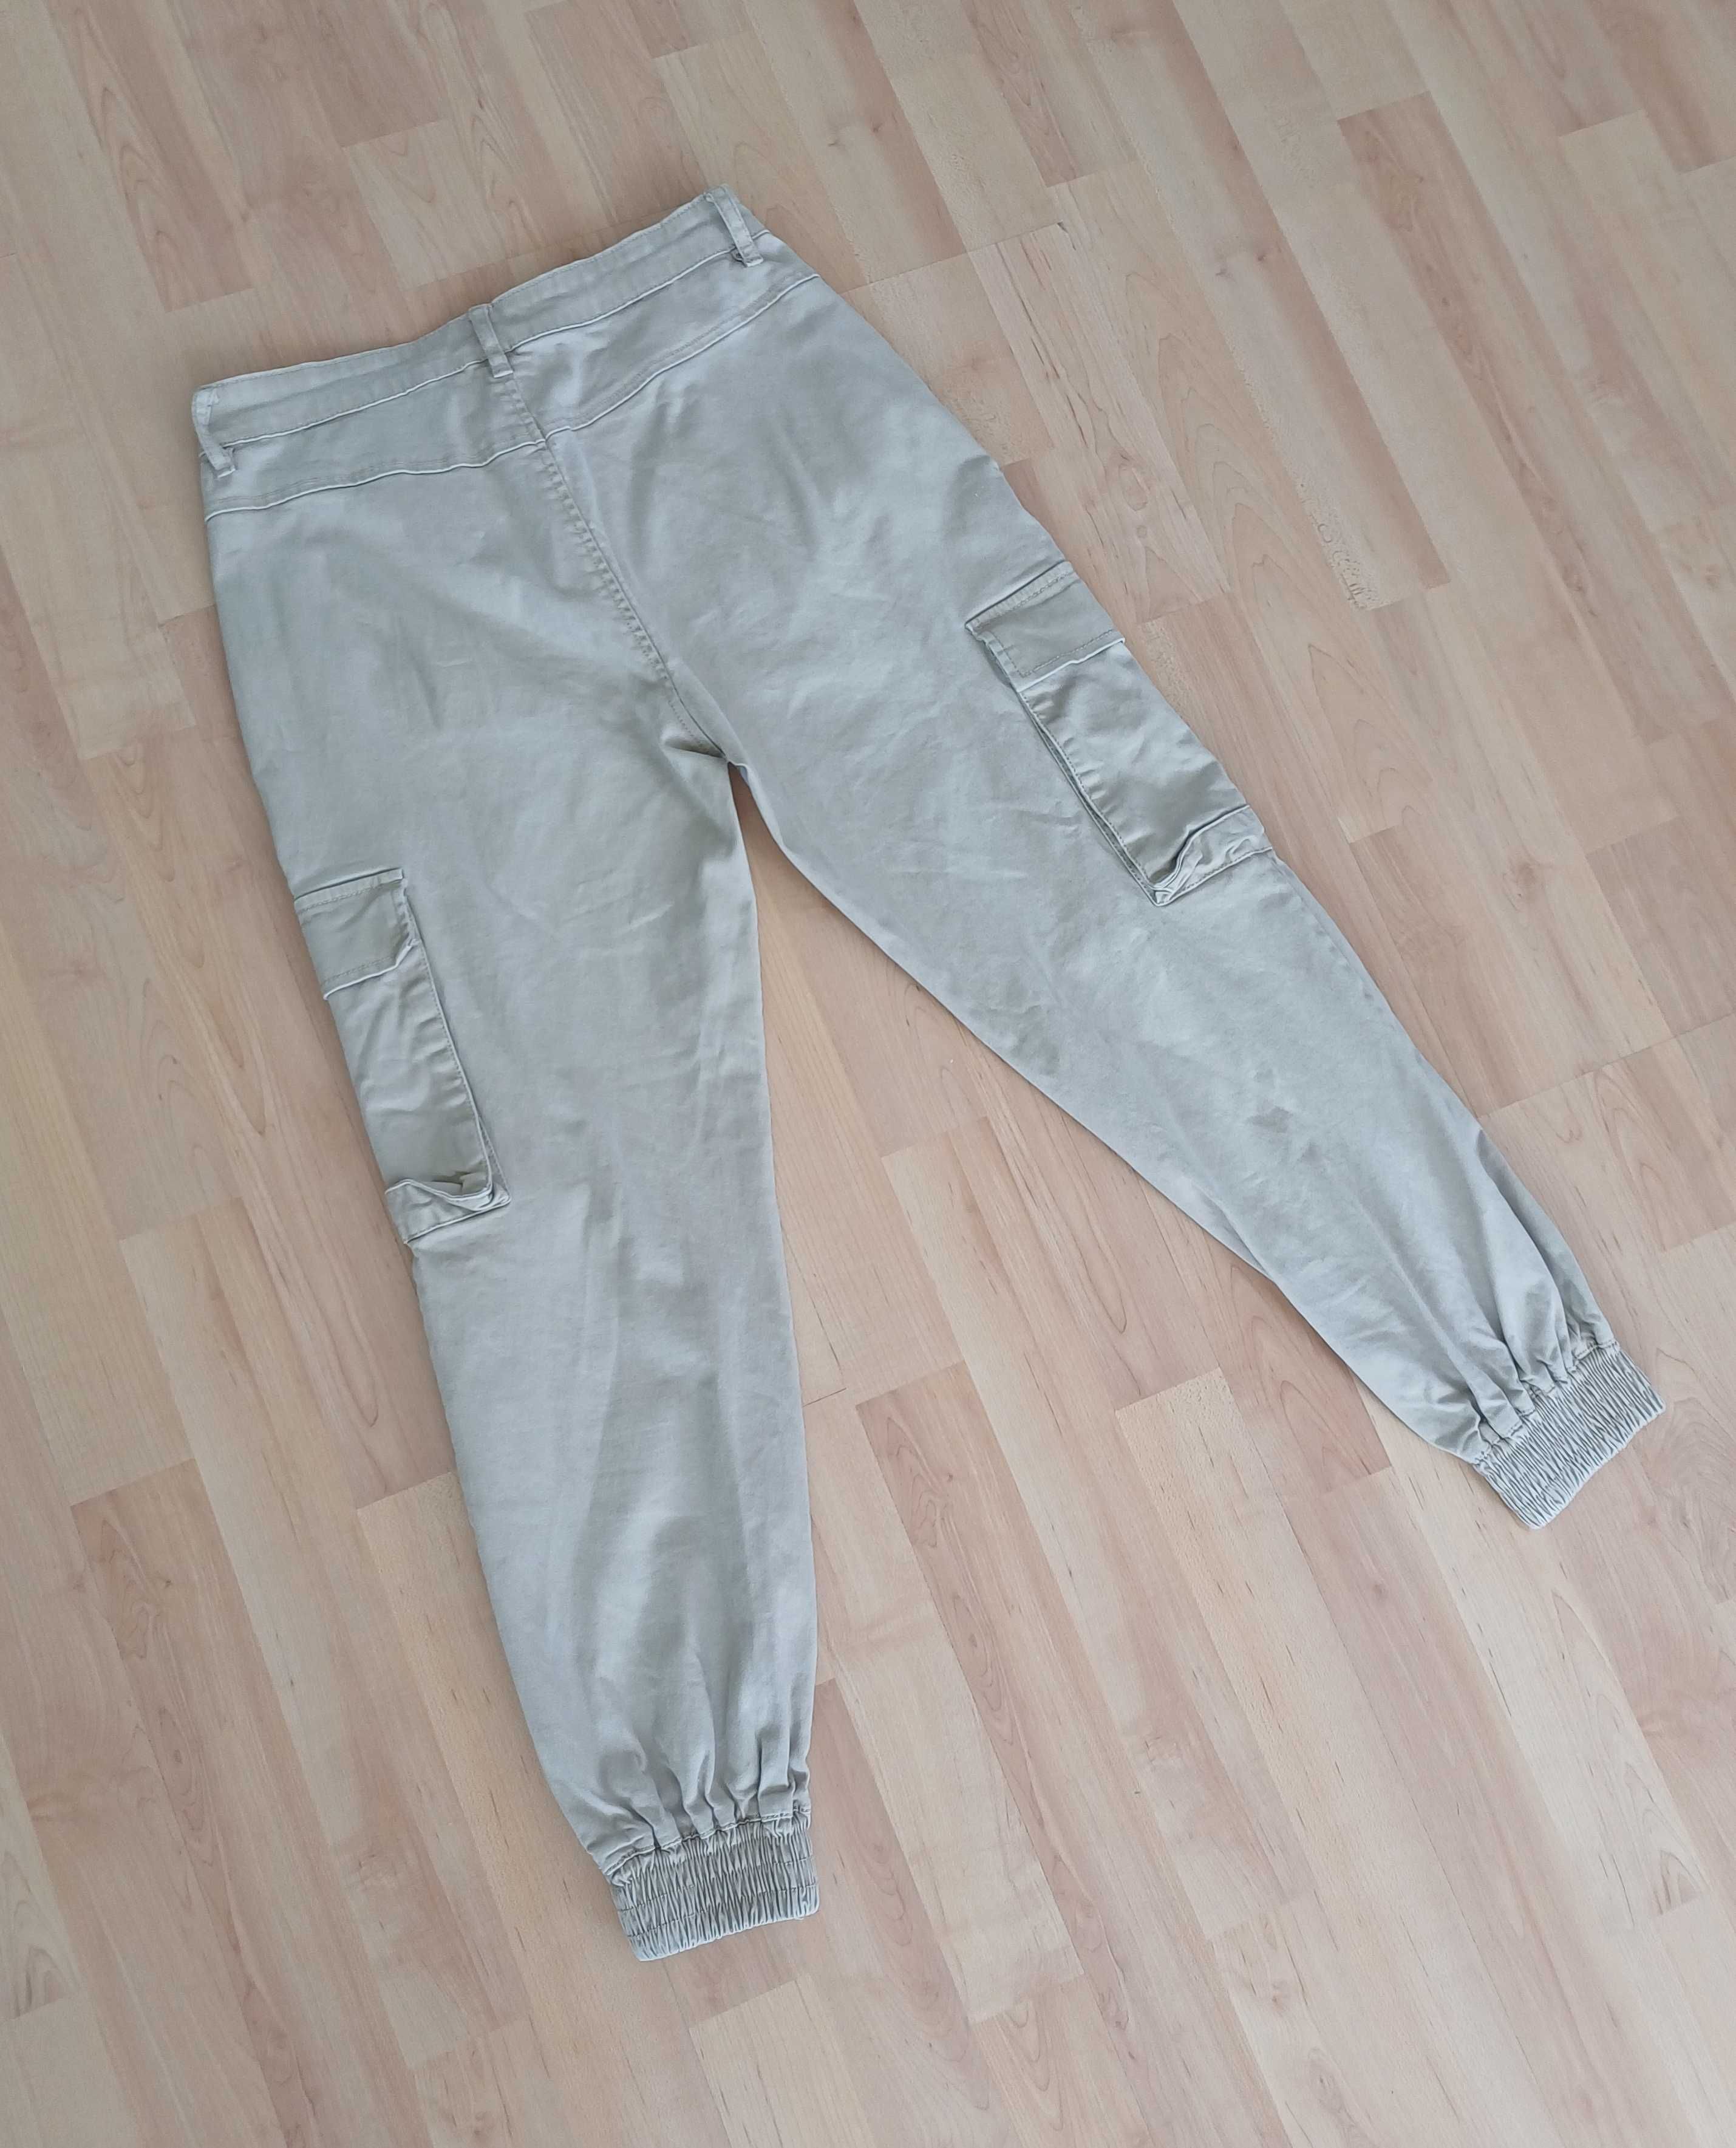 Spodnie długie damskie beżowe joggery ze ściągaczami S/36 M/38 bawełna